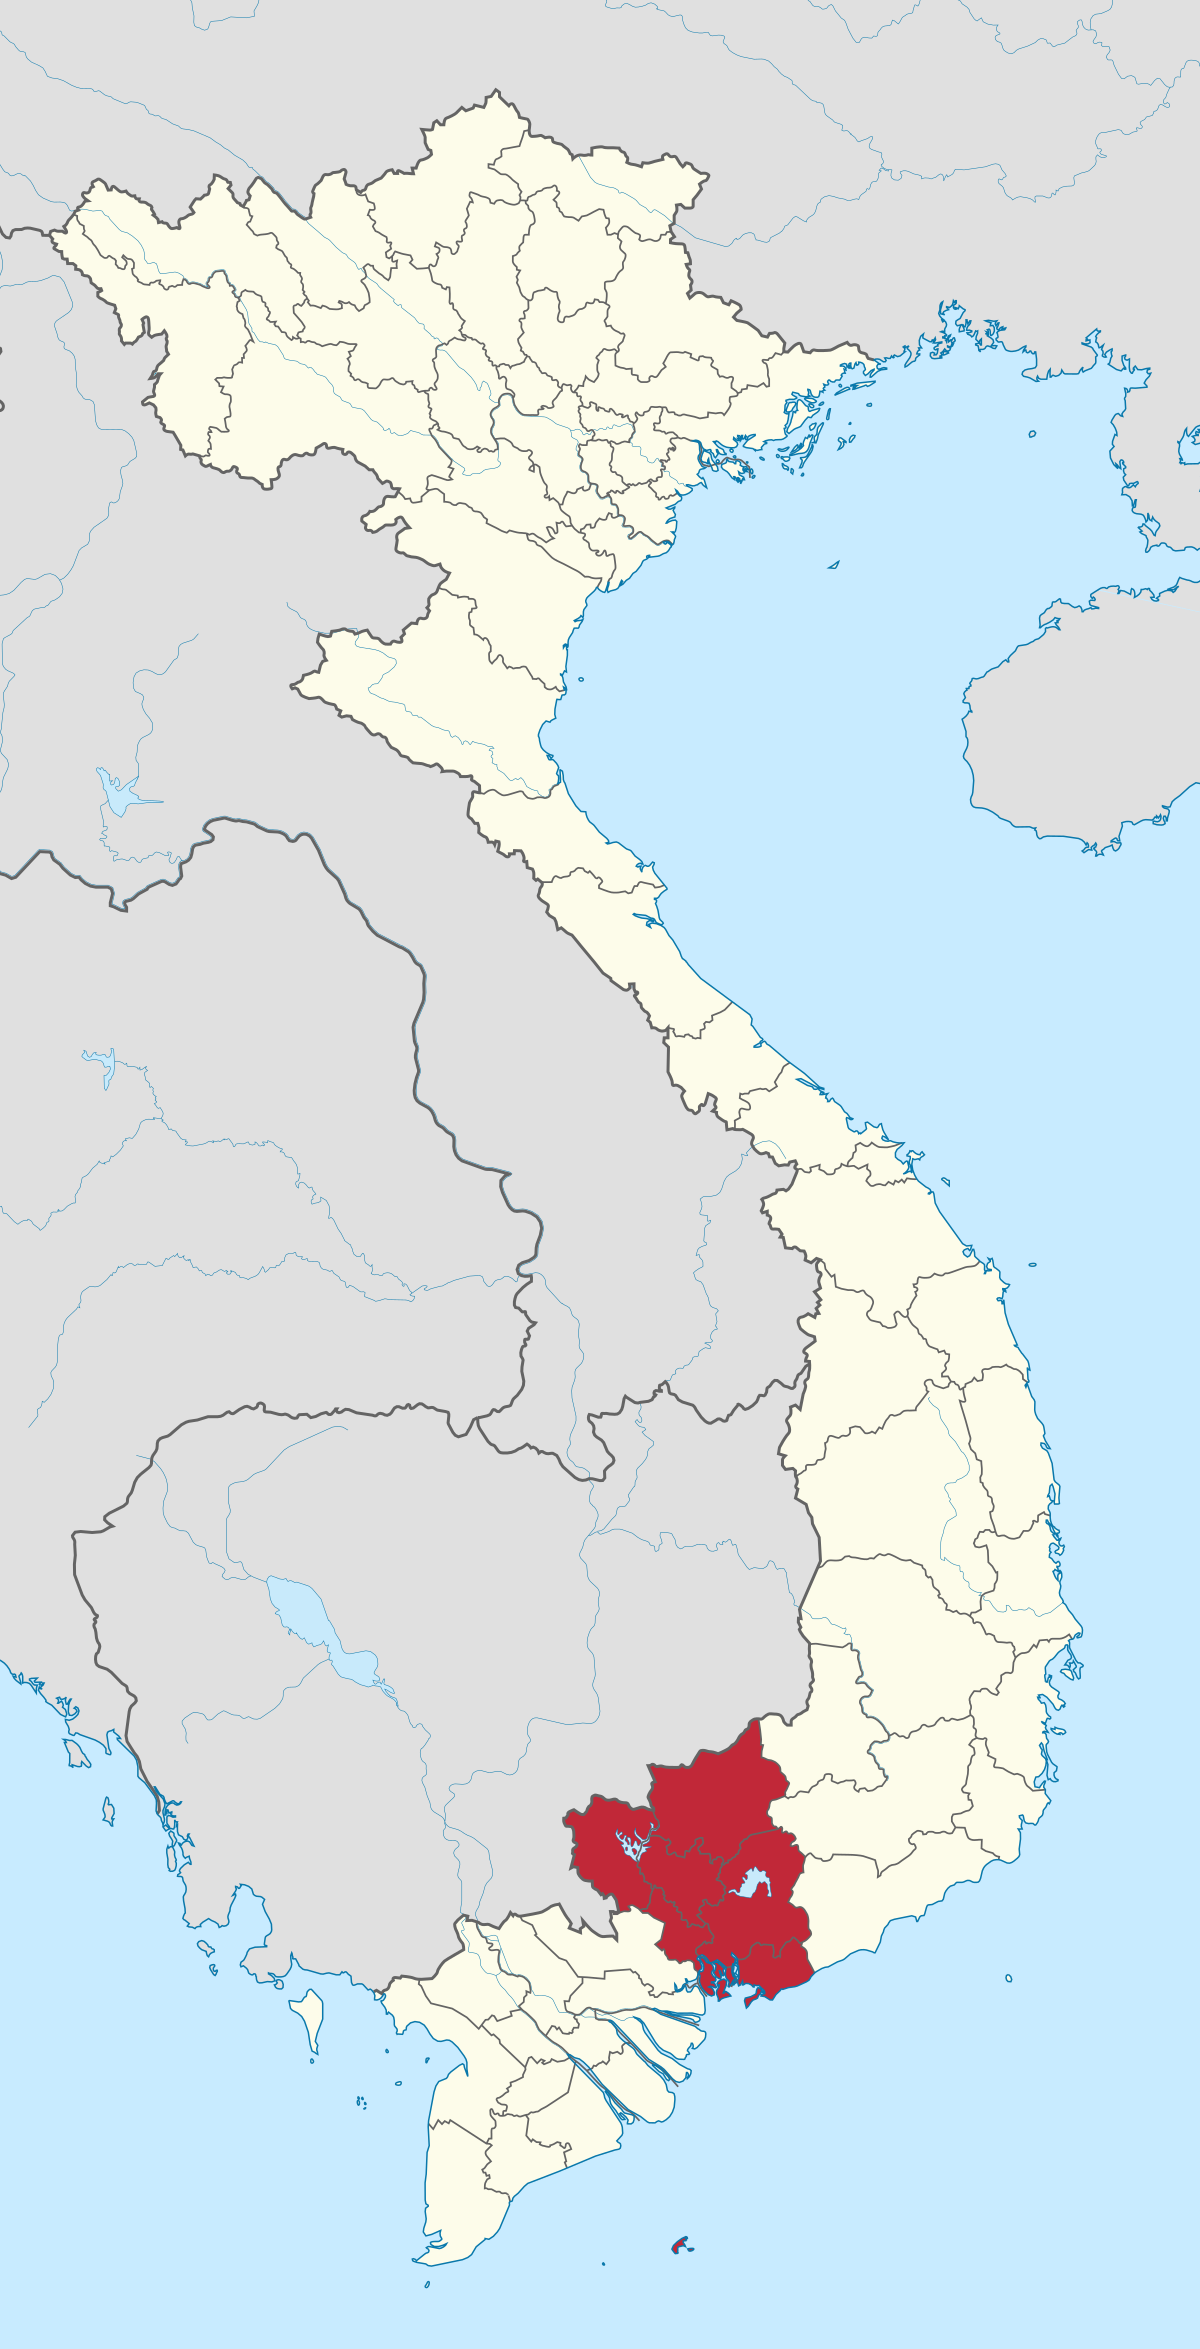 Đông Nam Bộ và Wikipedia tiếng Việt ở Bình Phước - với sự phát triển của Wikipedia tiếng Việt tại Bình Phước, người dân cũng có thể tiếp cận thông tin về vùng Đông Nam Bộ một cách dễ dàng và nhanh chóng. Đây là một nguồn thông tin hữu ích giúp người dân và du khách biết thêm về khu vực này.